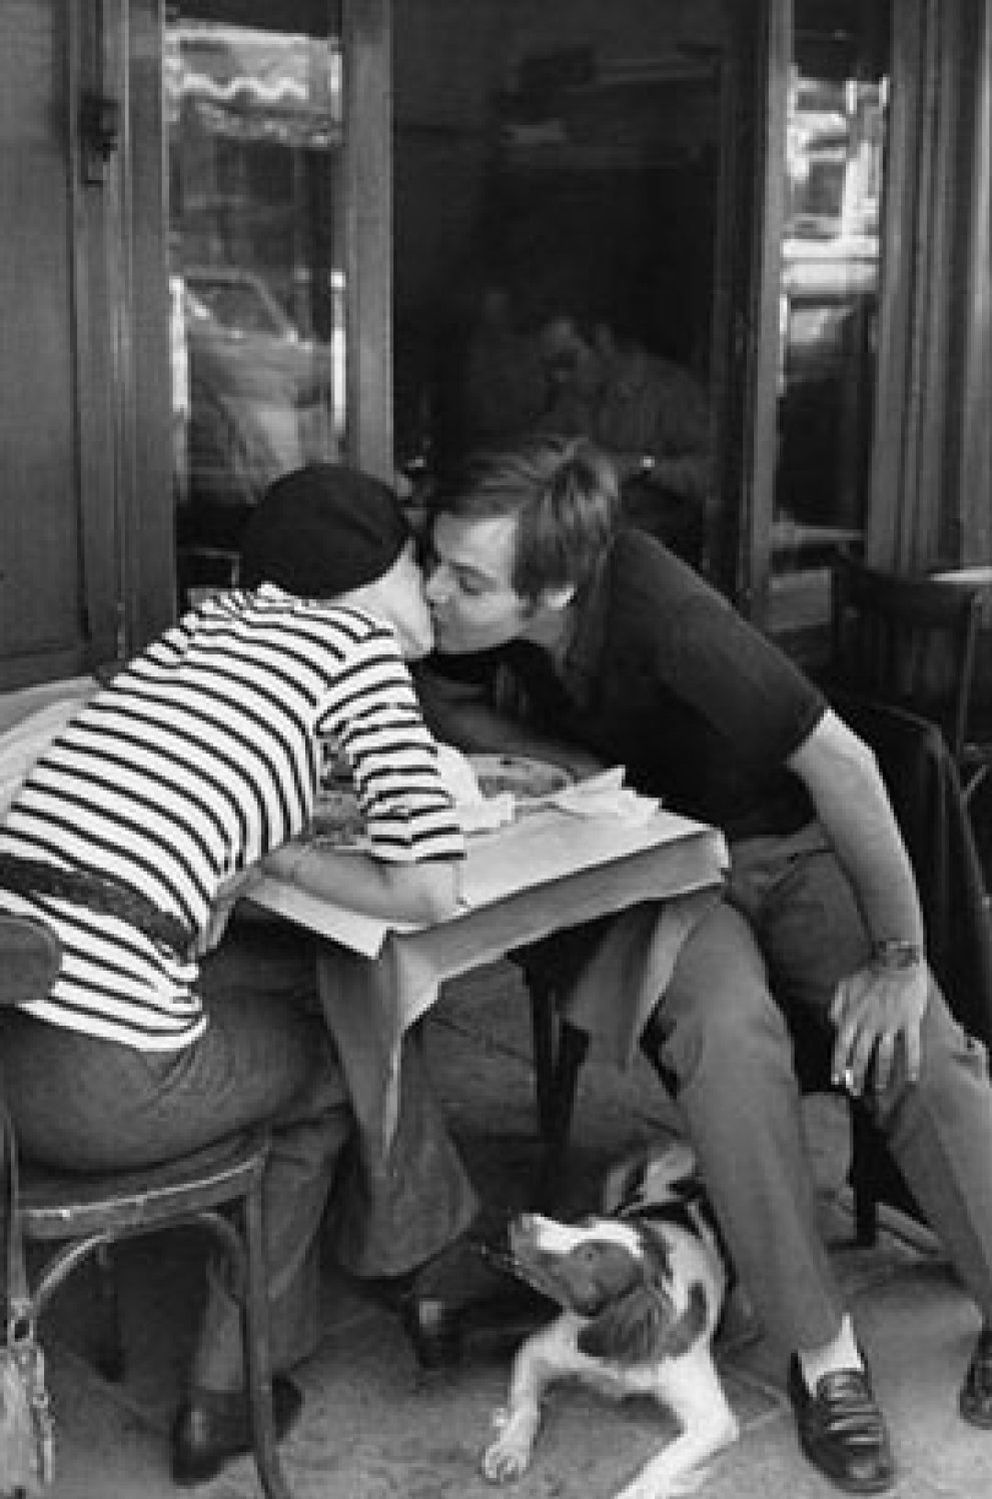 Foto: Cien años de Cartier-Bresson: el "instante decisivo"